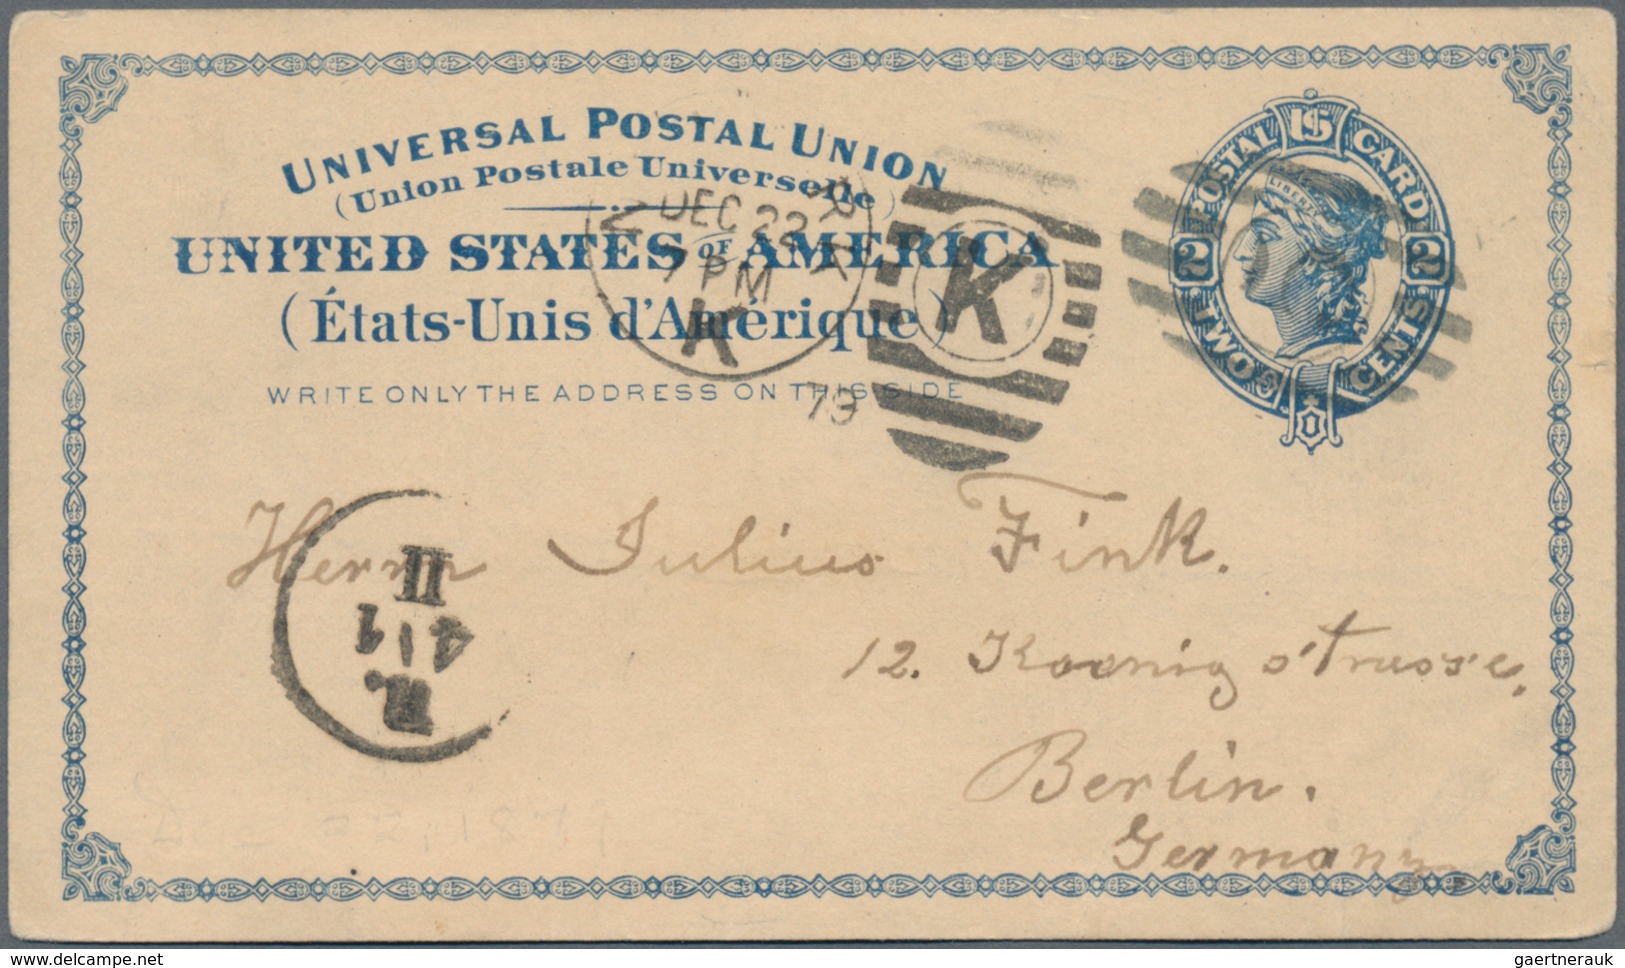 Vereinigte Staaten von Amerika - Ganzsachen: starting 1873 holding of ca. 210 unused and used postal